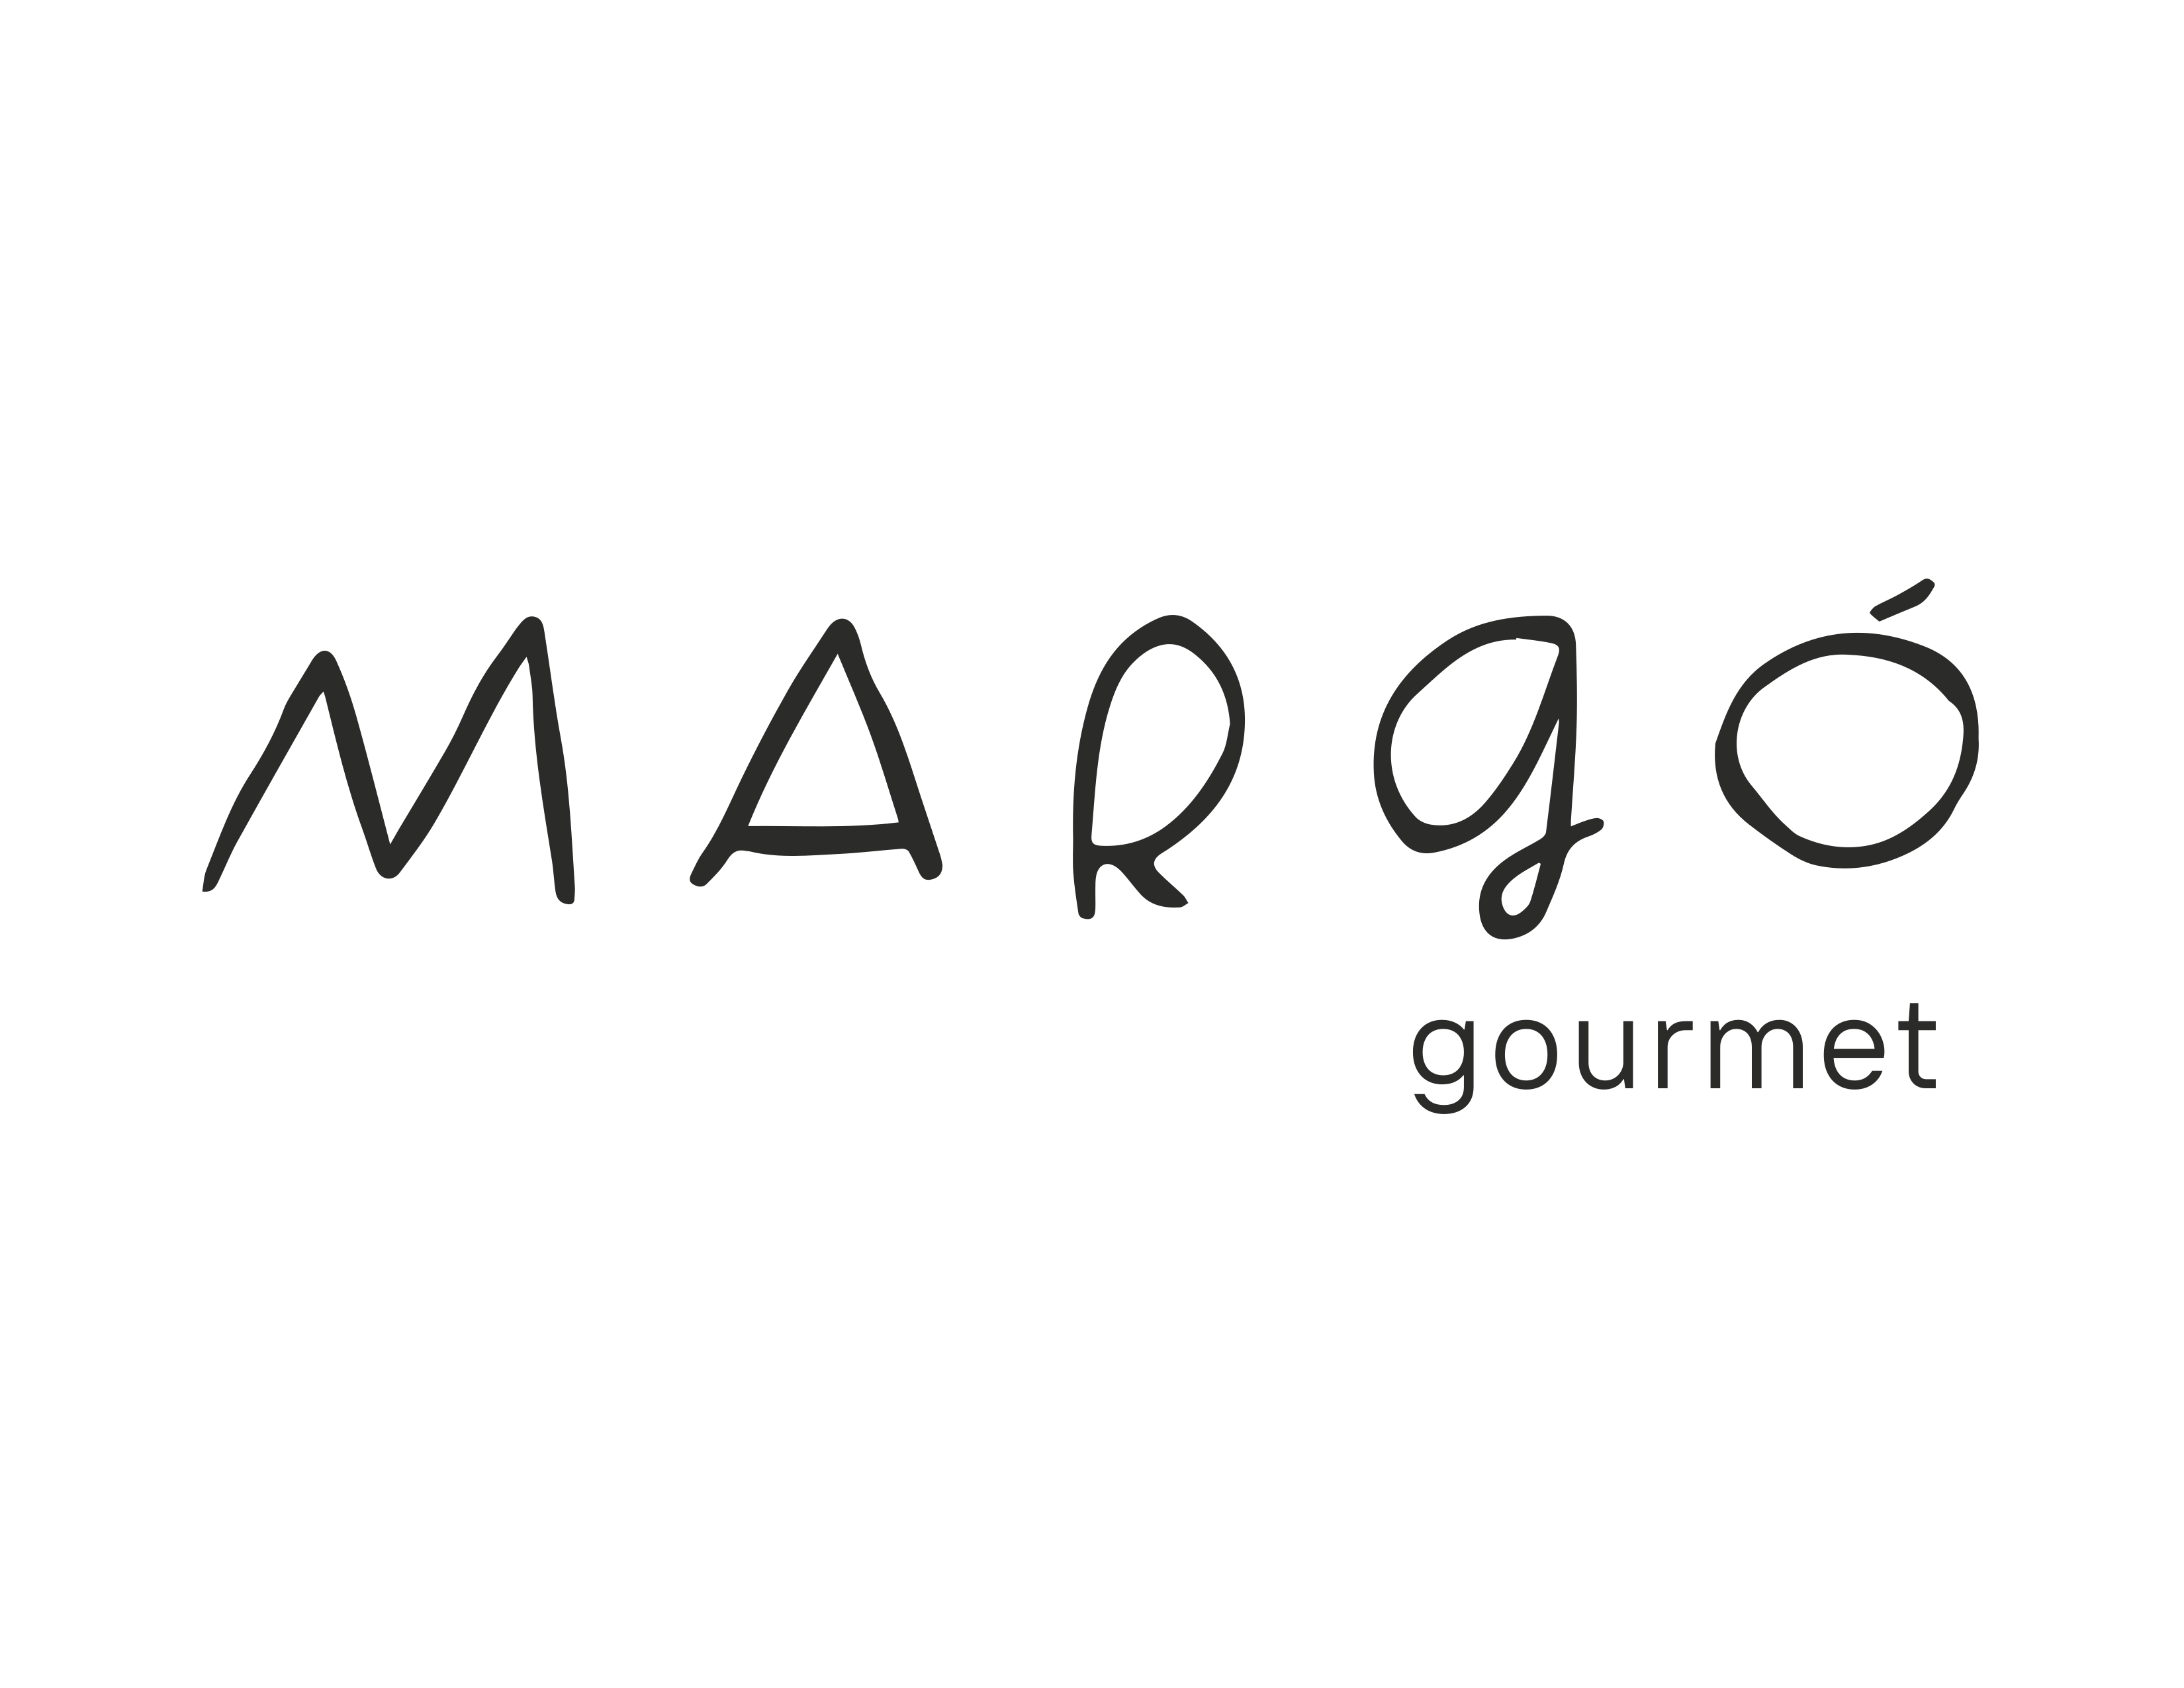 logo-Margo